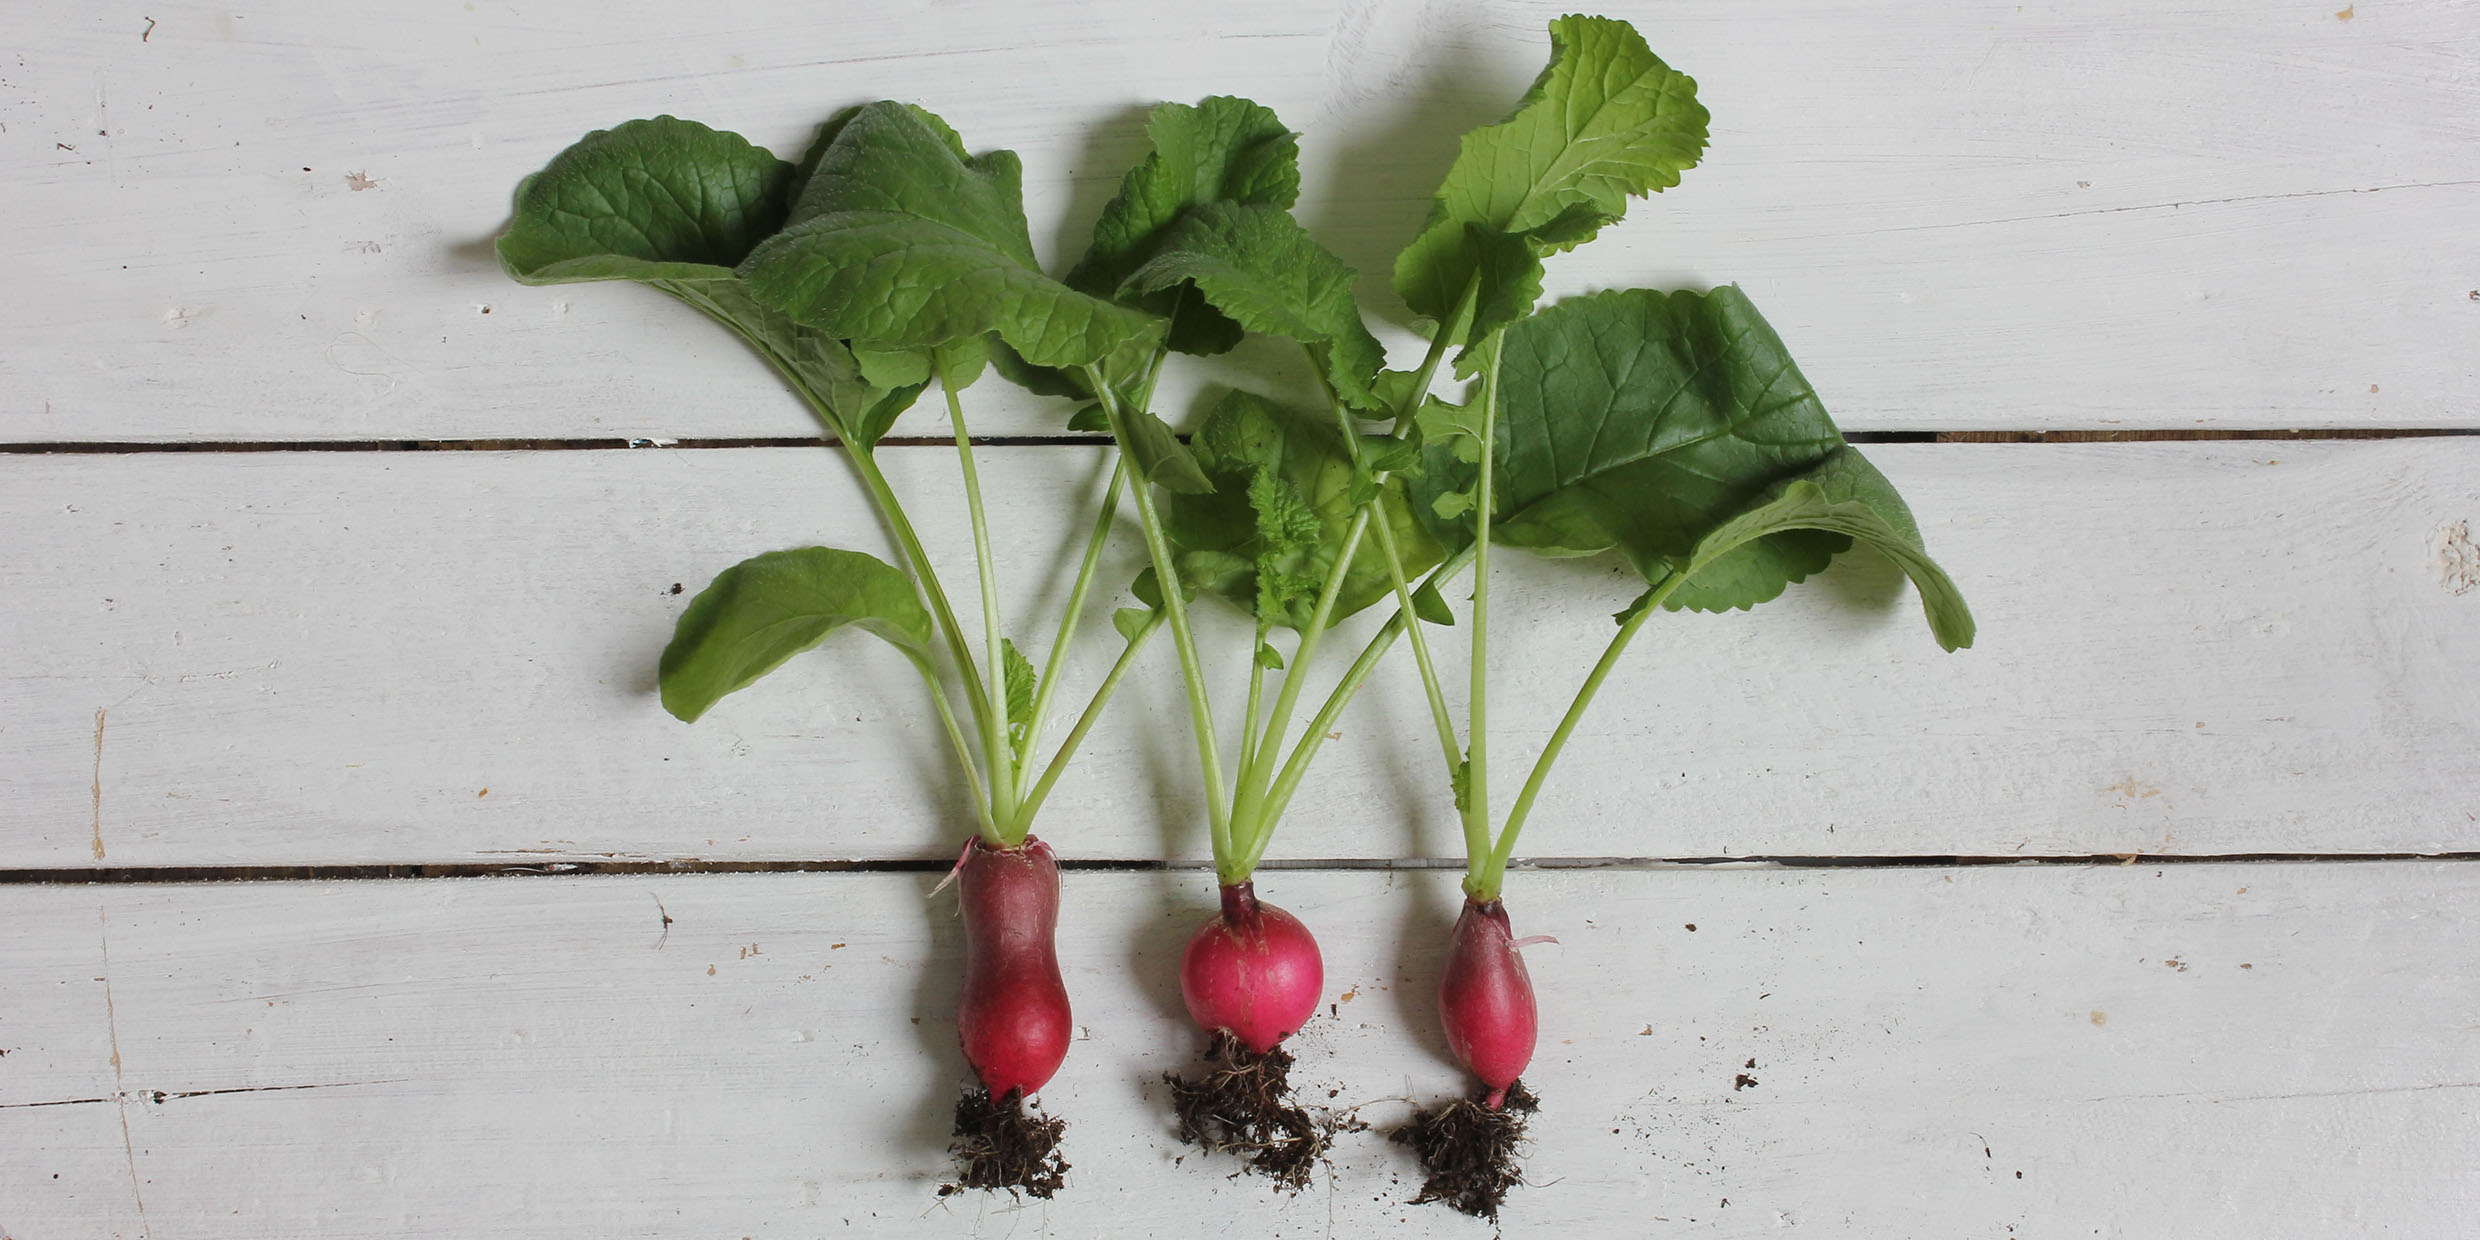 Image of radishes